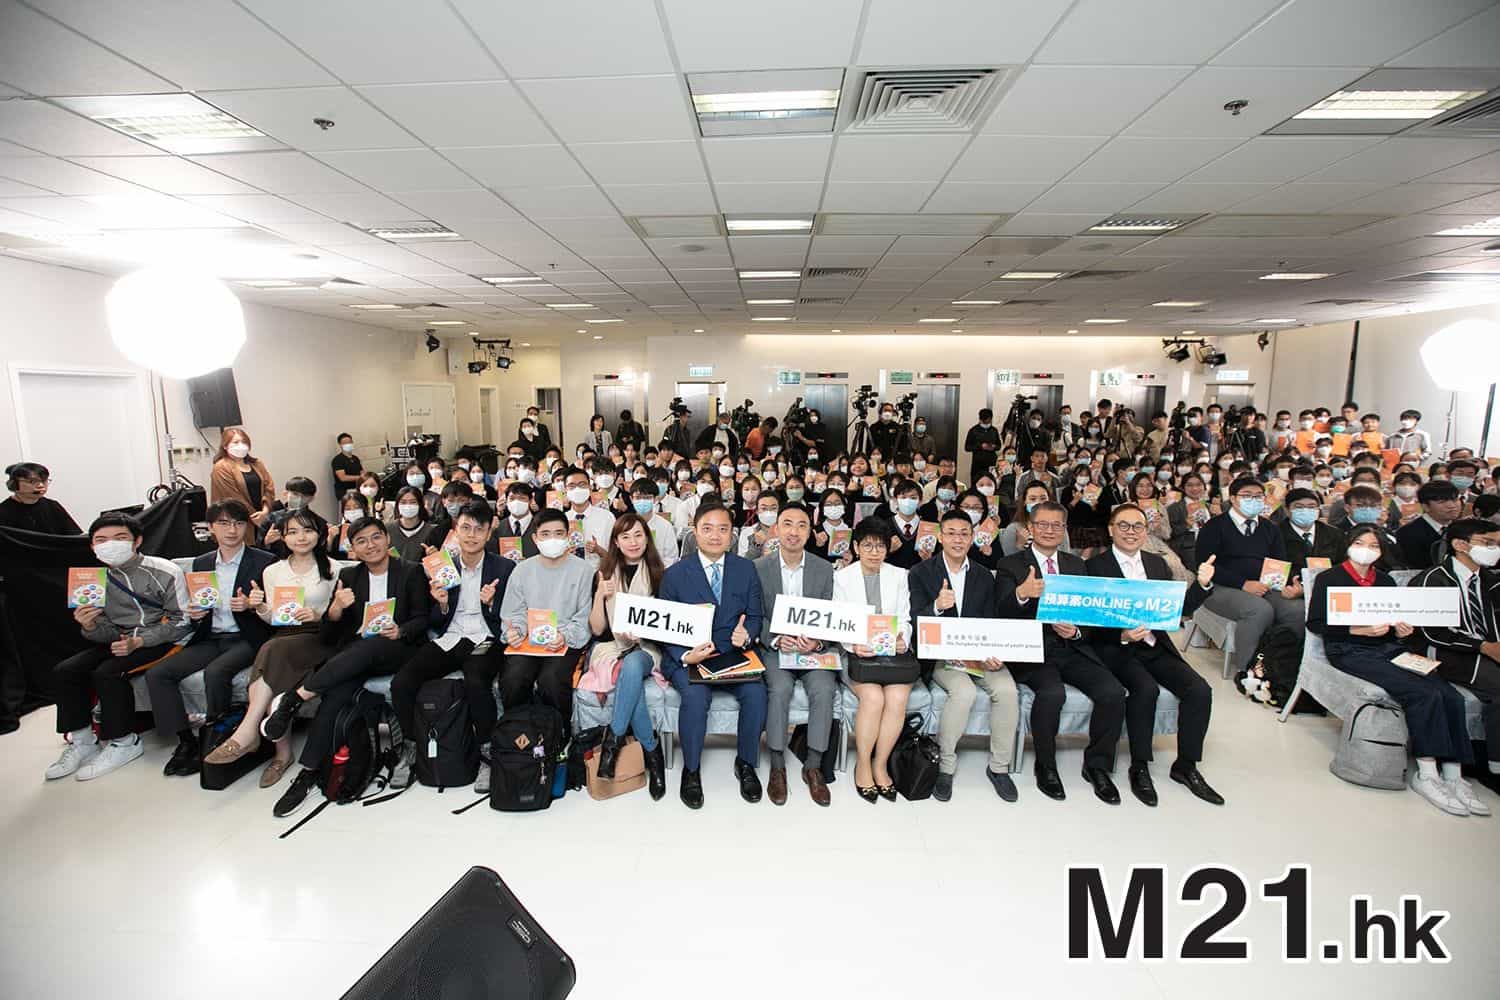 香港青年創業家總商會 - 《預算案Online@M21》節目